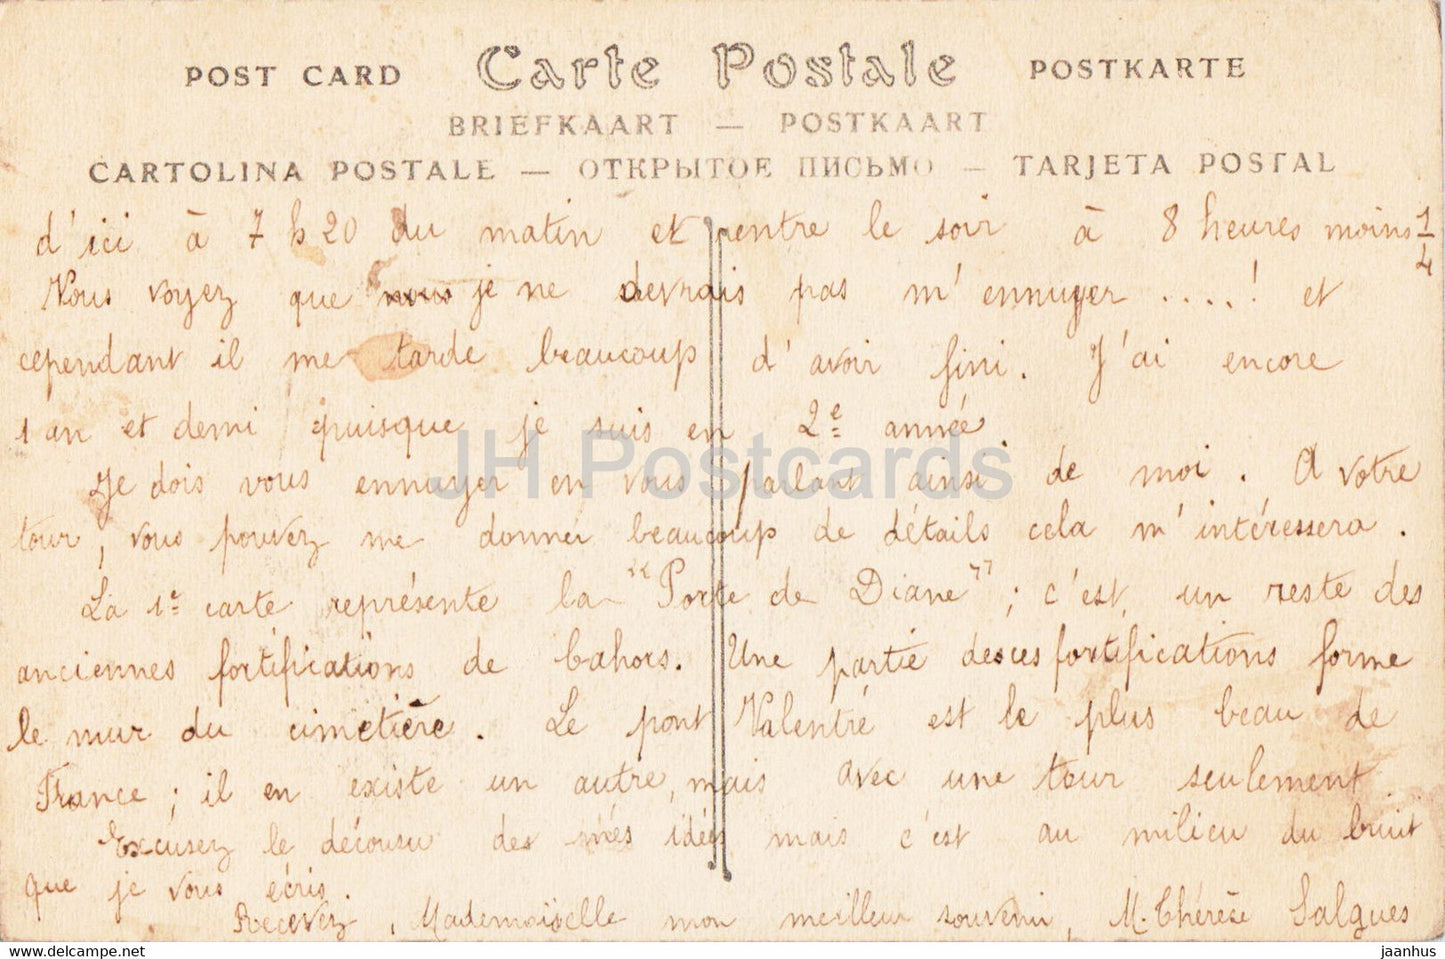 Cahors - Le Pont Valentre - pont - 74 - carte postale ancienne - 1911 - France - occasion